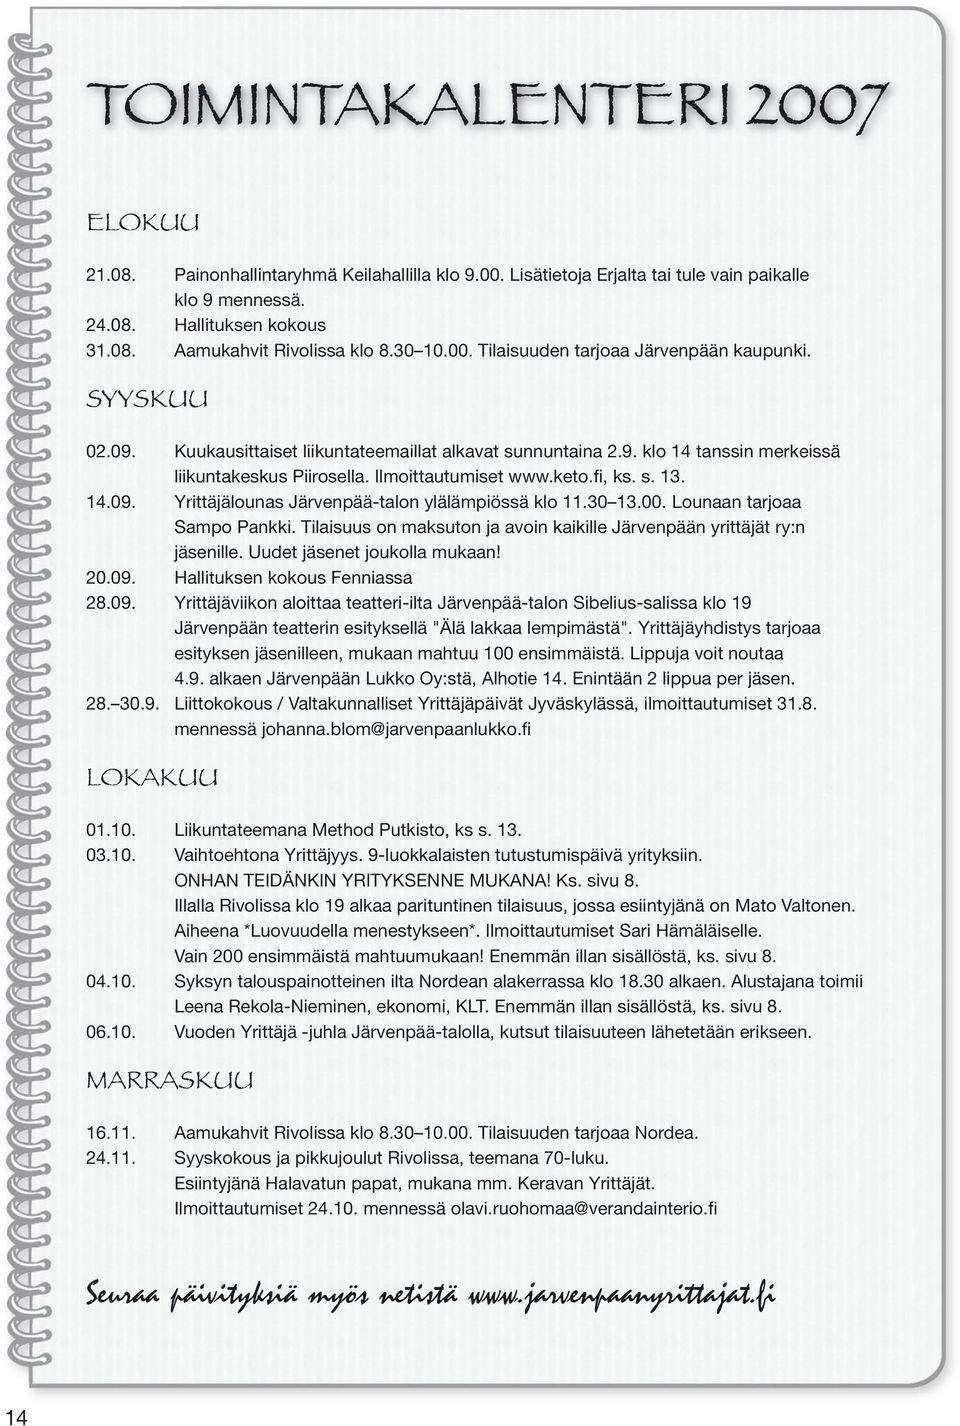 keto.fi, ks. s. 13. 14.09. Yrittäjälounas Järvenpää-talon ylälämpiössä klo 11.30 13.00. Lounaan tarjoaa Sampo Pankki. Tilaisuus on maksuton ja avoin kaikille Järvenpään yrittäjät ry:n jäsenille.